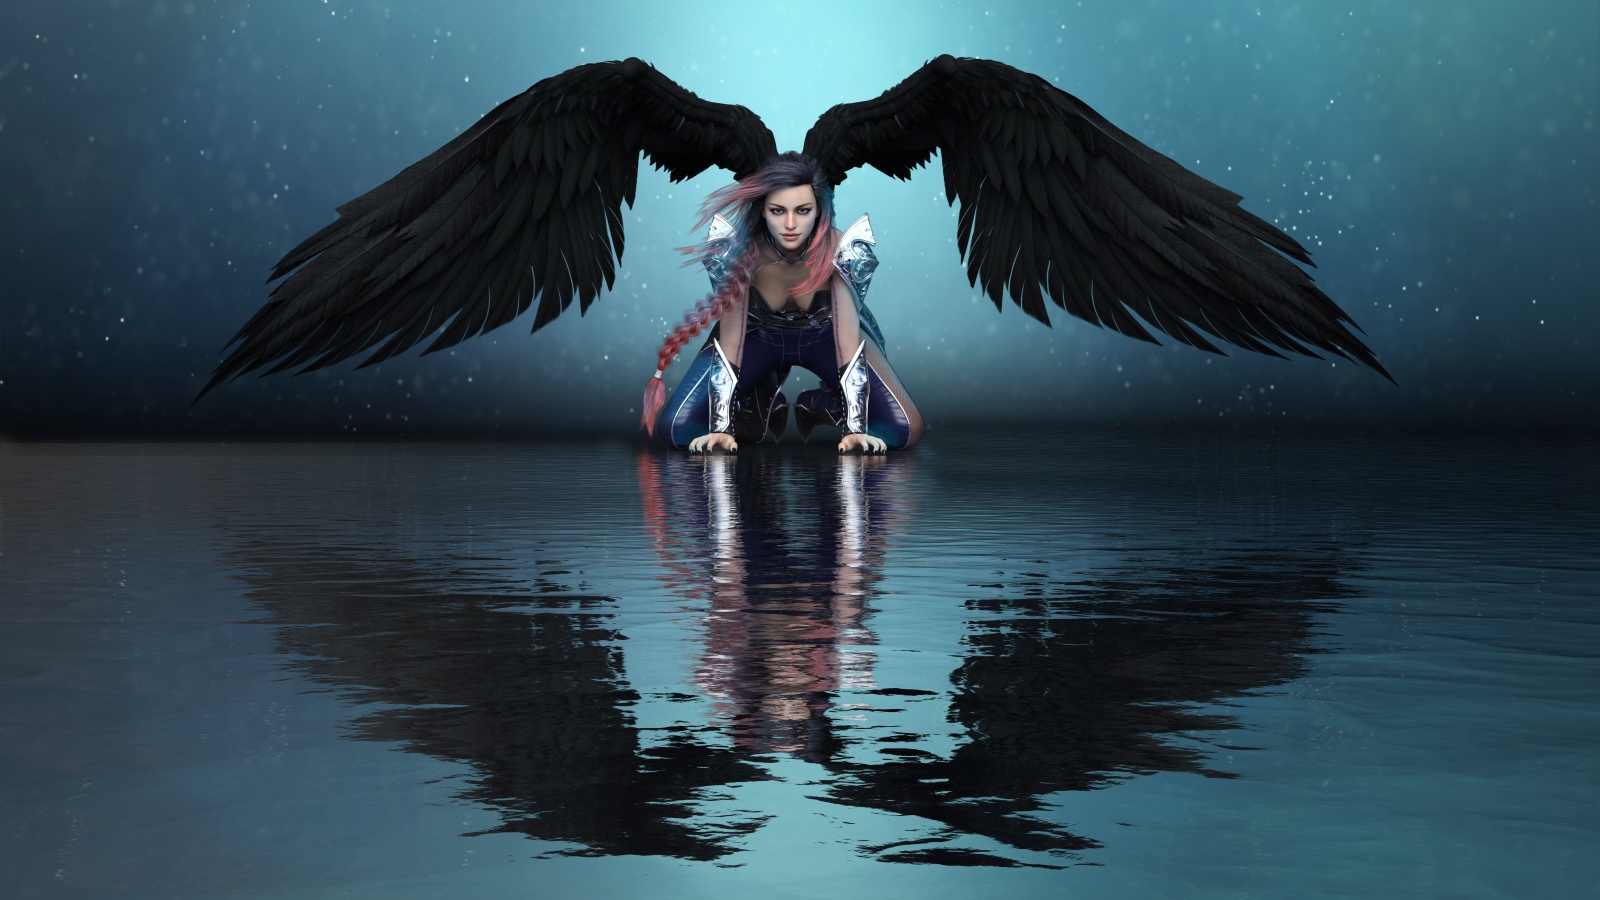 Фантастическая девушка ангел с черными крыльями отражается в воде 